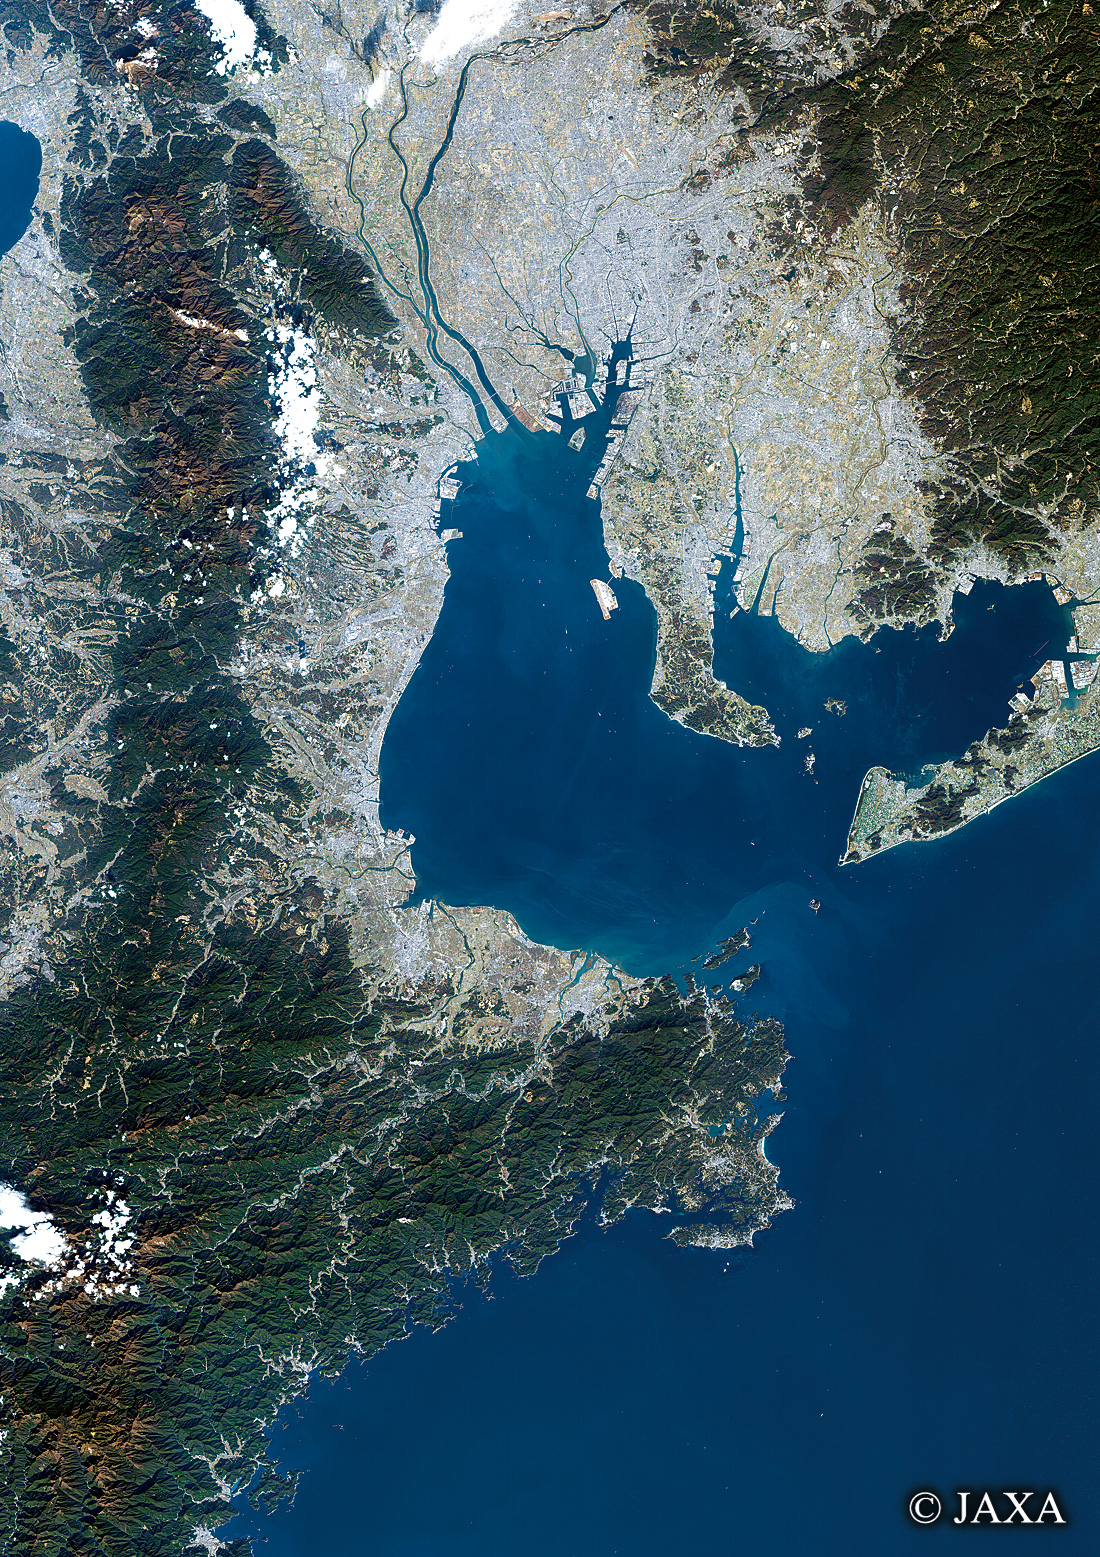 だいちから見た日本の都市 伊勢湾周辺:衛星画像